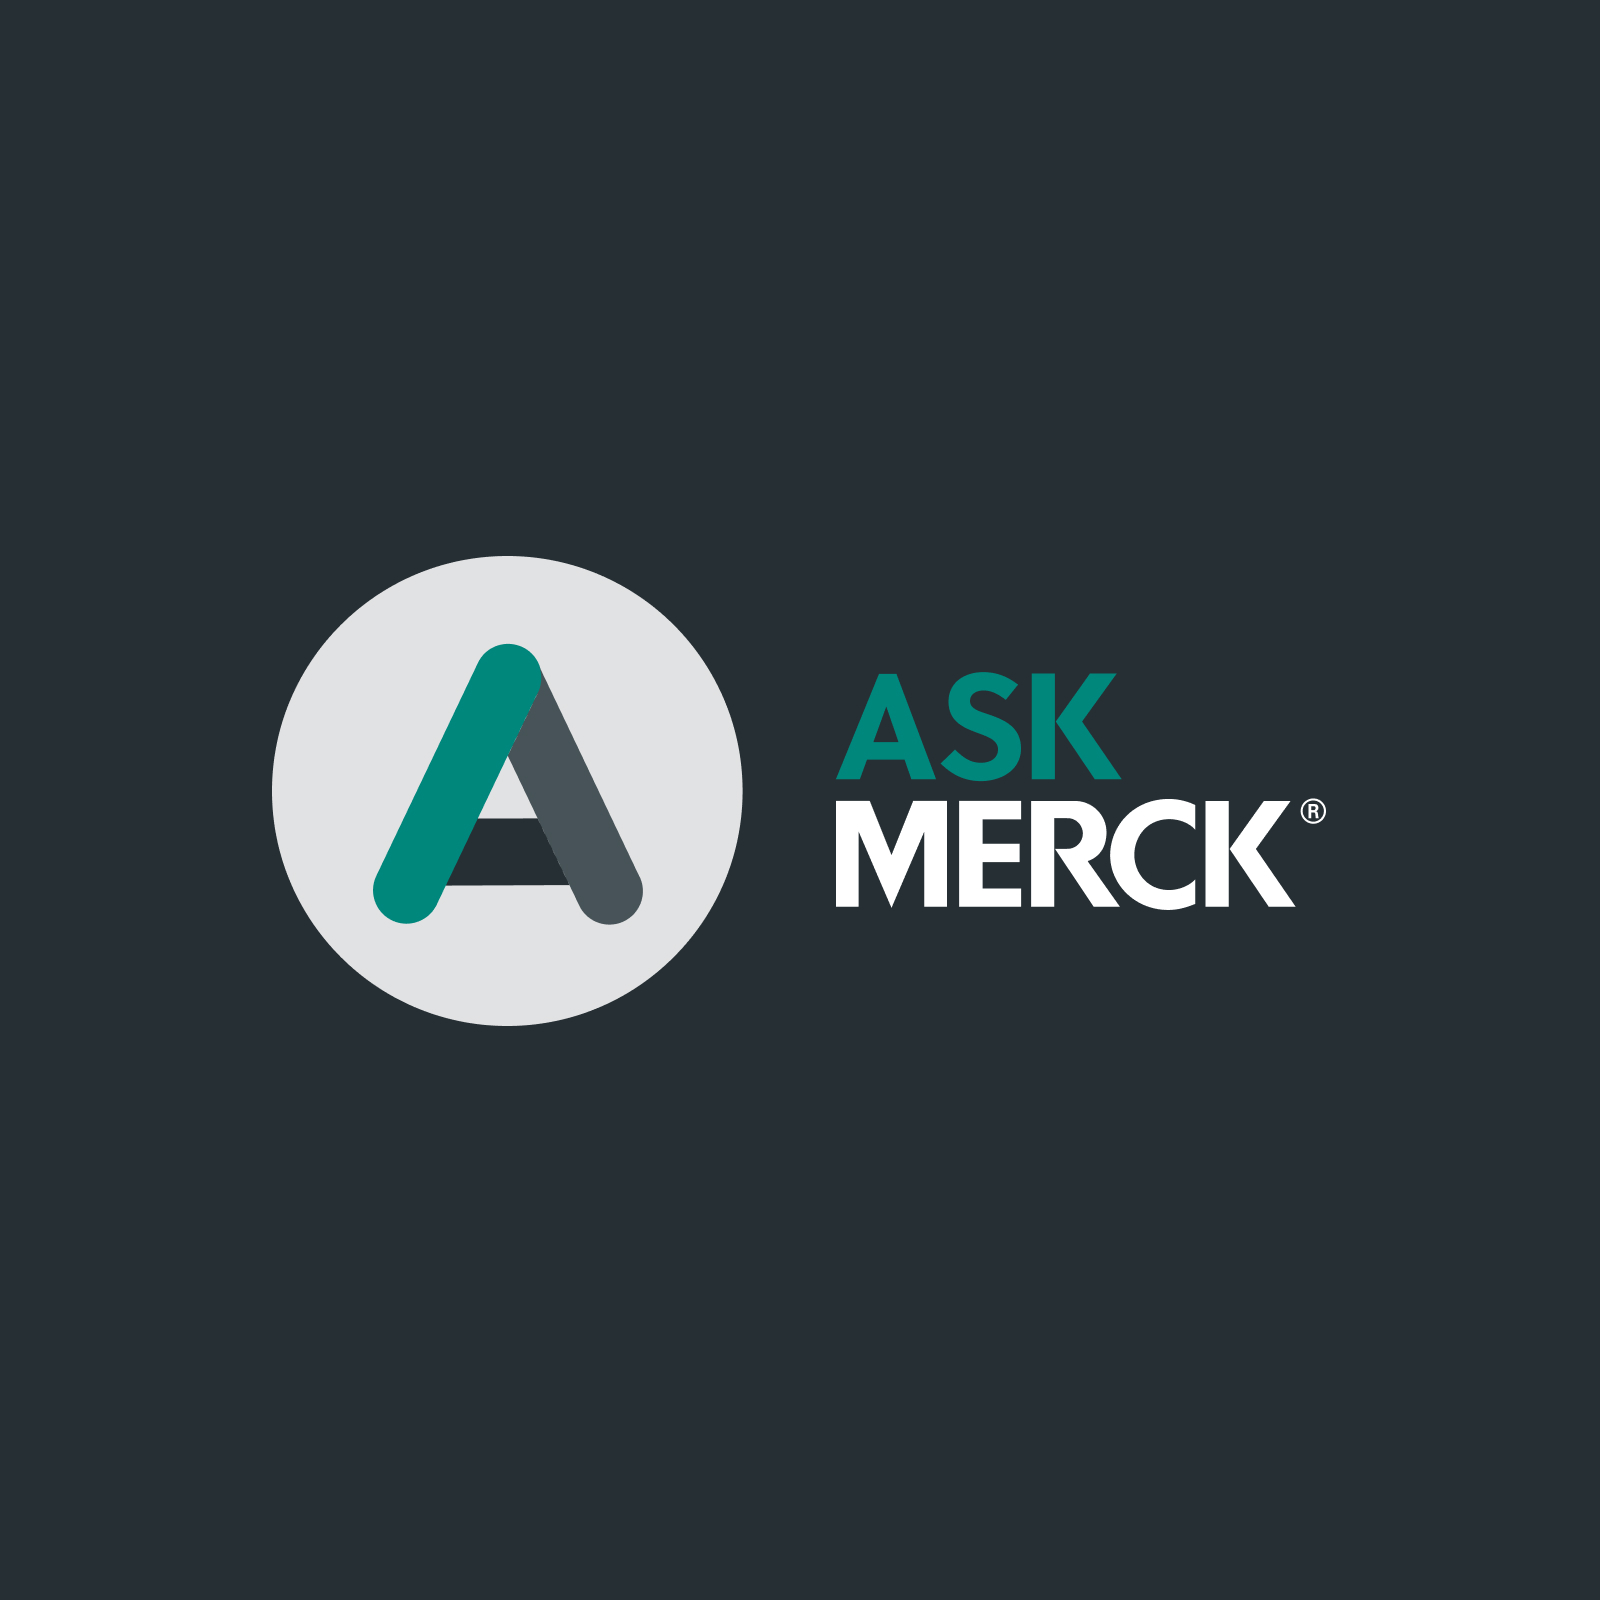 Ask Merck